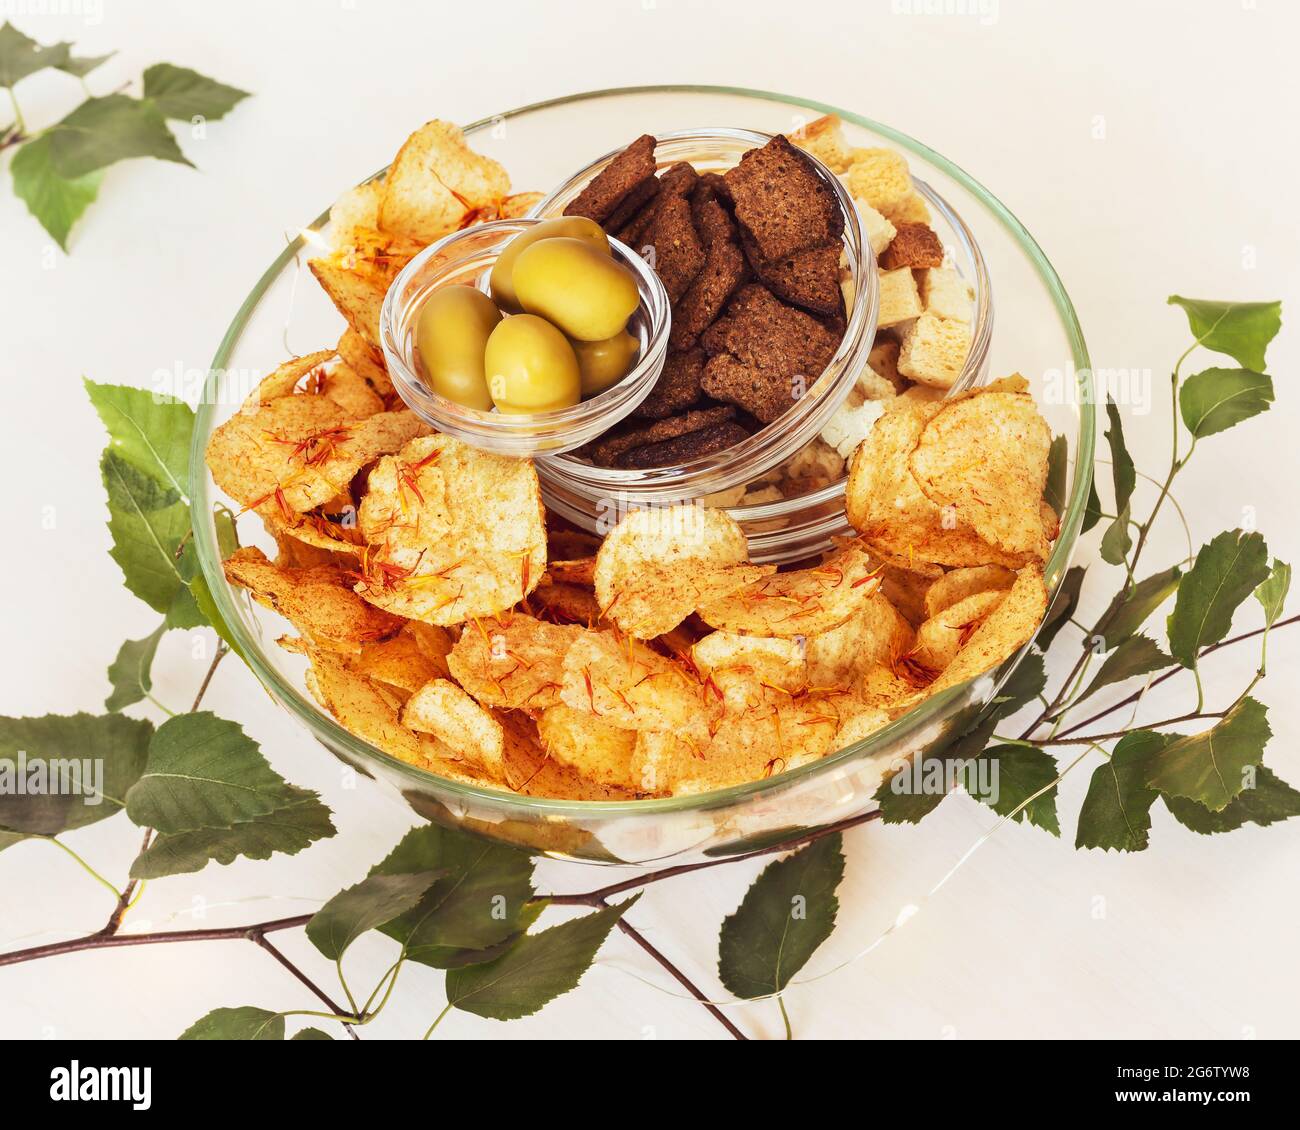 Été, composition alimentaire avec bière, encas solty : crackers de seigle, crackers de blé, chips de pomme de terre avec épices et olives vertes dans des bols en verre Banque D'Images